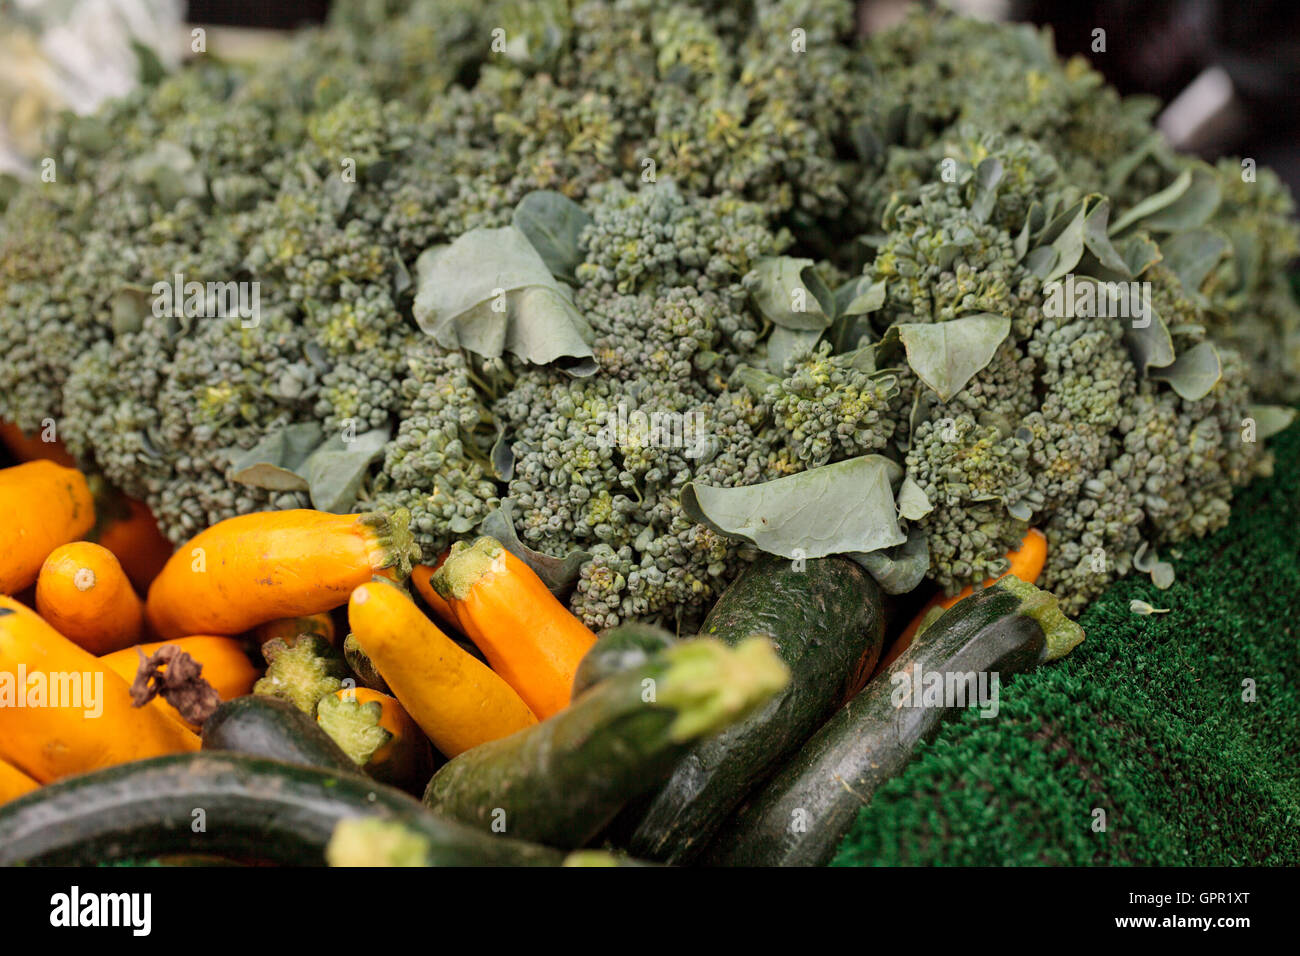 Organici di broccoli, zucchine e squash coltivate e raccolte nel sud della California e visualizzate in un mercato degli agricoltori Foto Stock